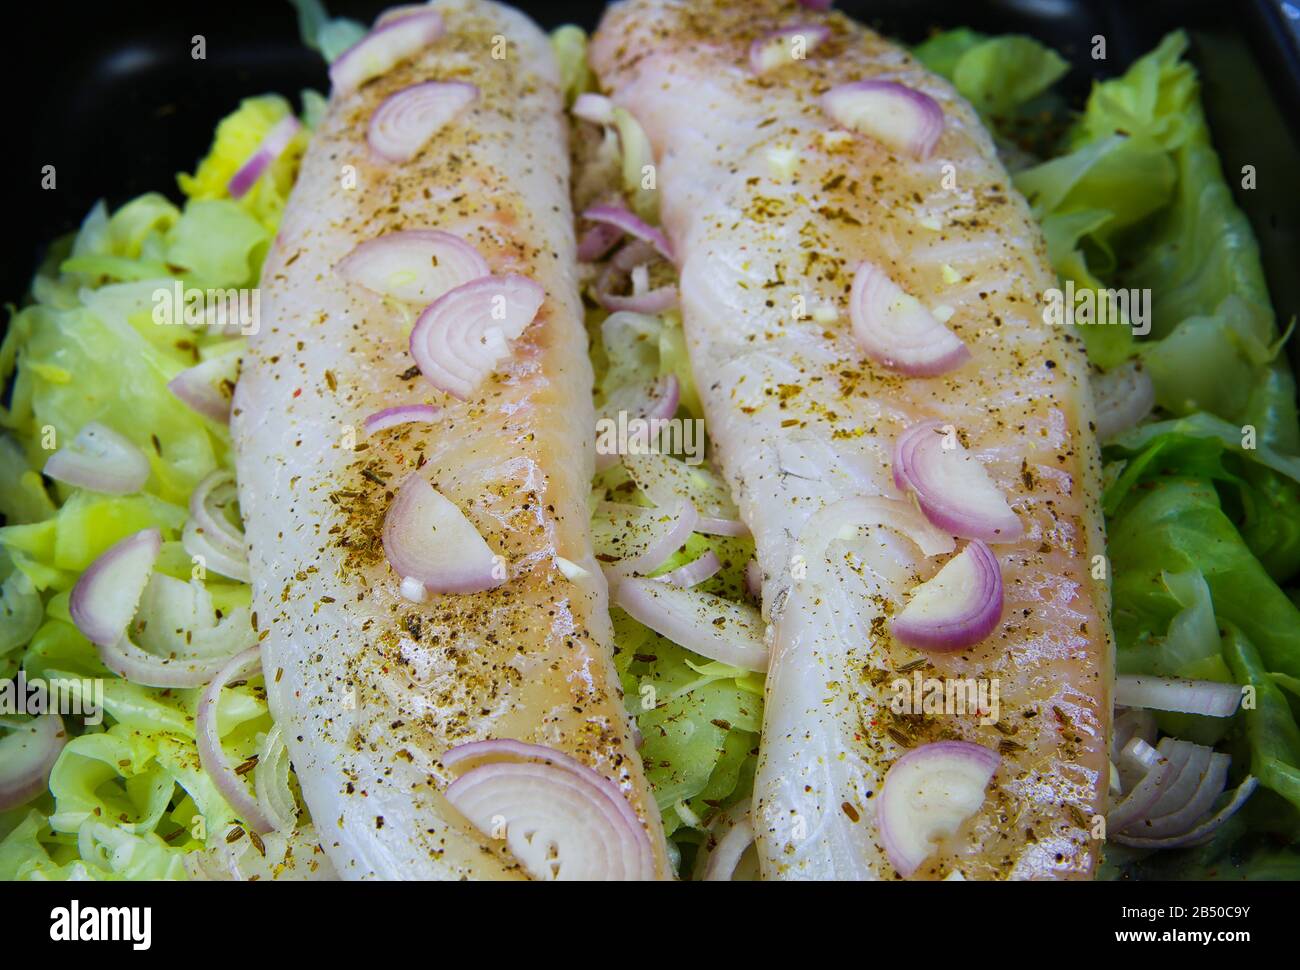 Zubereitung von Fischmehl: Blick auf isolierte Backofentablette mit rohen Codfish-Filets, die auf Spitzkohl gepocht werden, gewürzt mit Zwiebeln, Kreuzkümmel, Knoblauch und peppe Stockfoto